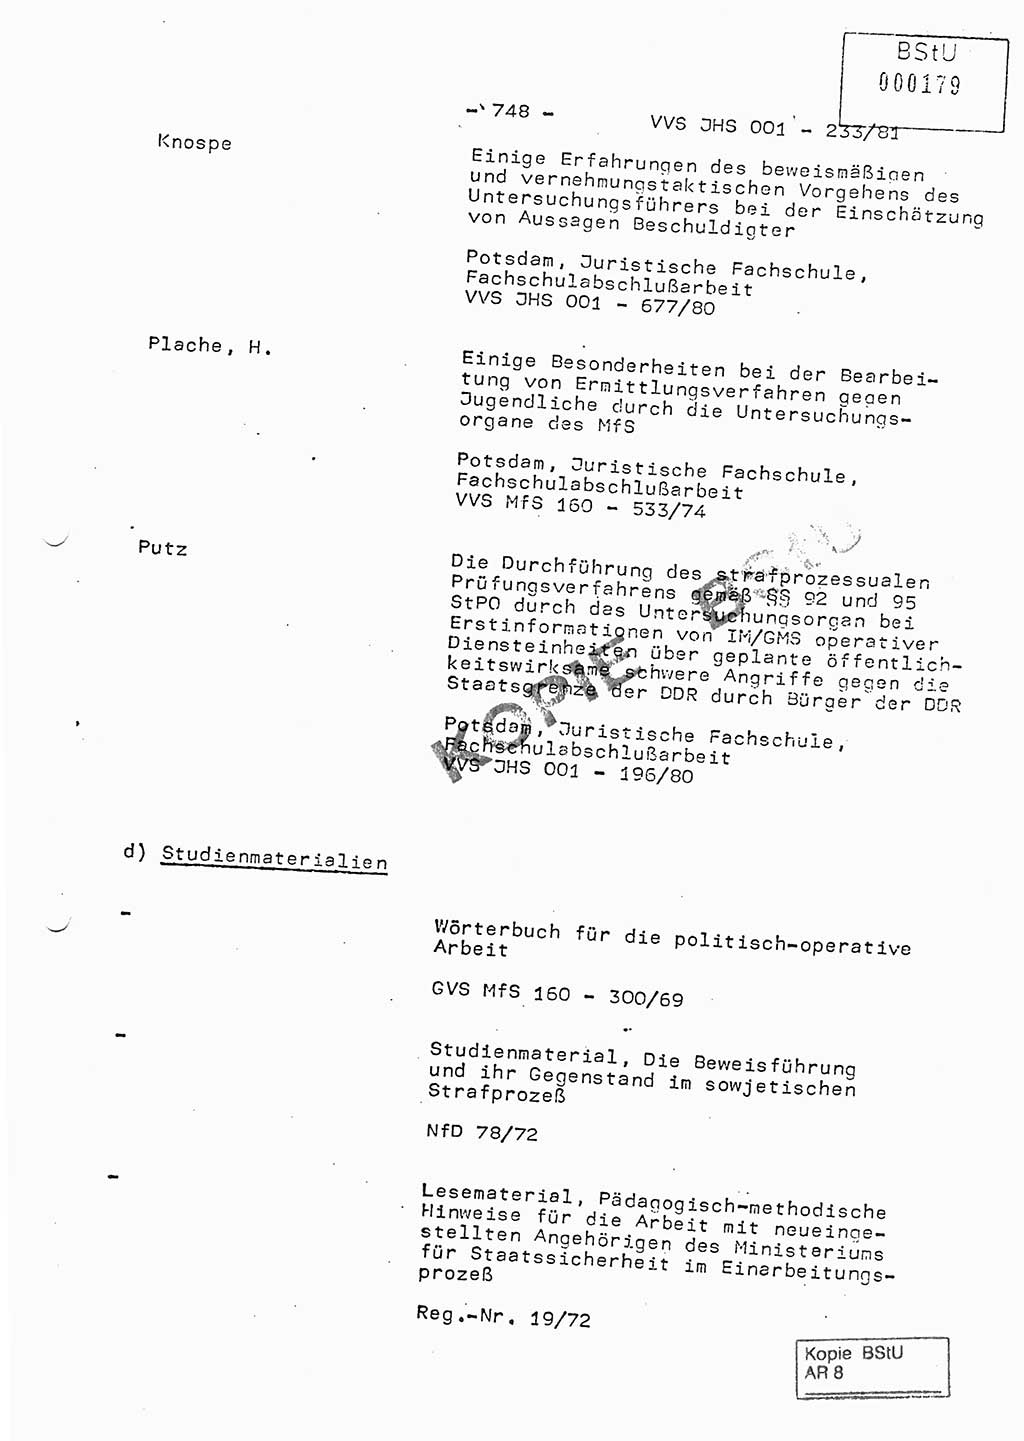 Dissertation Oberstleutnant Horst Zank (JHS), Oberstleutnant Dr. Karl-Heinz Knoblauch (JHS), Oberstleutnant Gustav-Adolf Kowalewski (HA Ⅸ), Oberstleutnant Wolfgang Plötner (HA Ⅸ), Ministerium für Staatssicherheit (MfS) [Deutsche Demokratische Republik (DDR)], Juristische Hochschule (JHS), Vertrauliche Verschlußsache (VVS) o001-233/81, Potsdam 1981, Blatt 748 (Diss. MfS DDR JHS VVS o001-233/81 1981, Bl. 748)